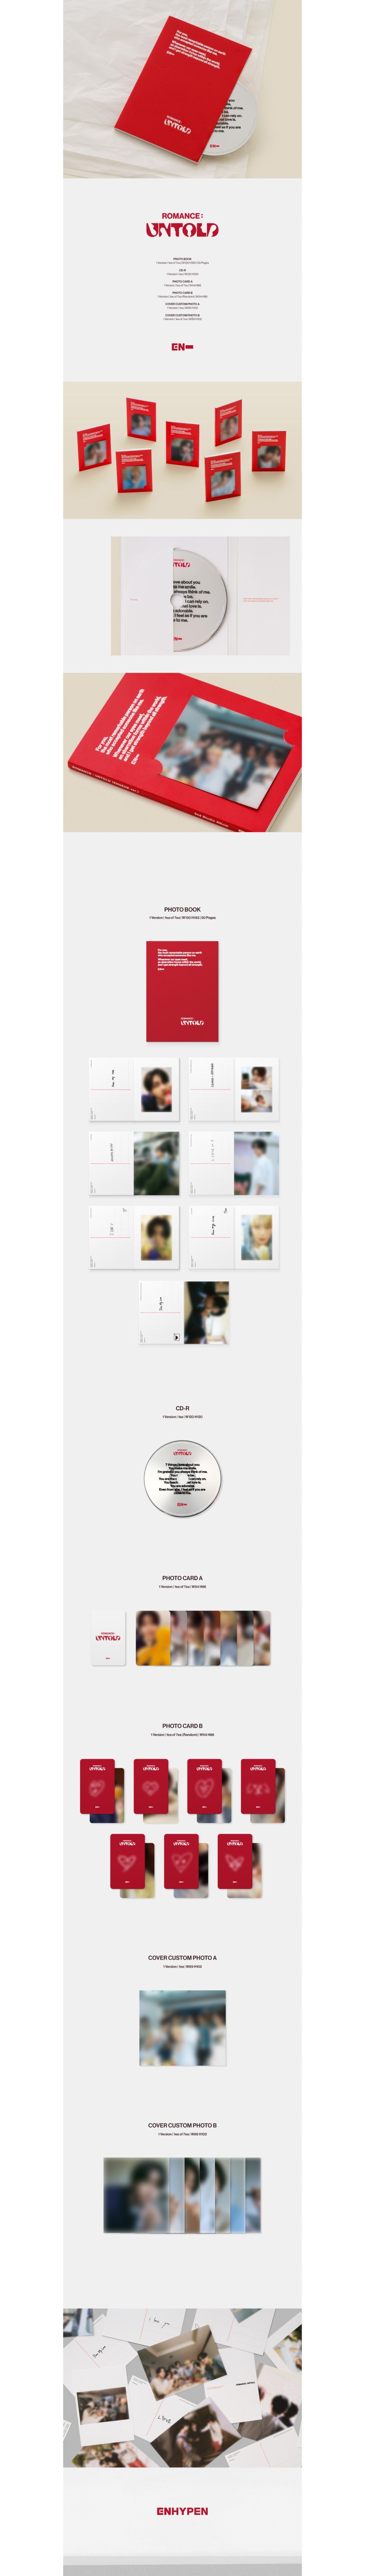 ENHYPEN 2nd Full Album – ROMANCE : UNTOLD (Engene Ver.) (Random)